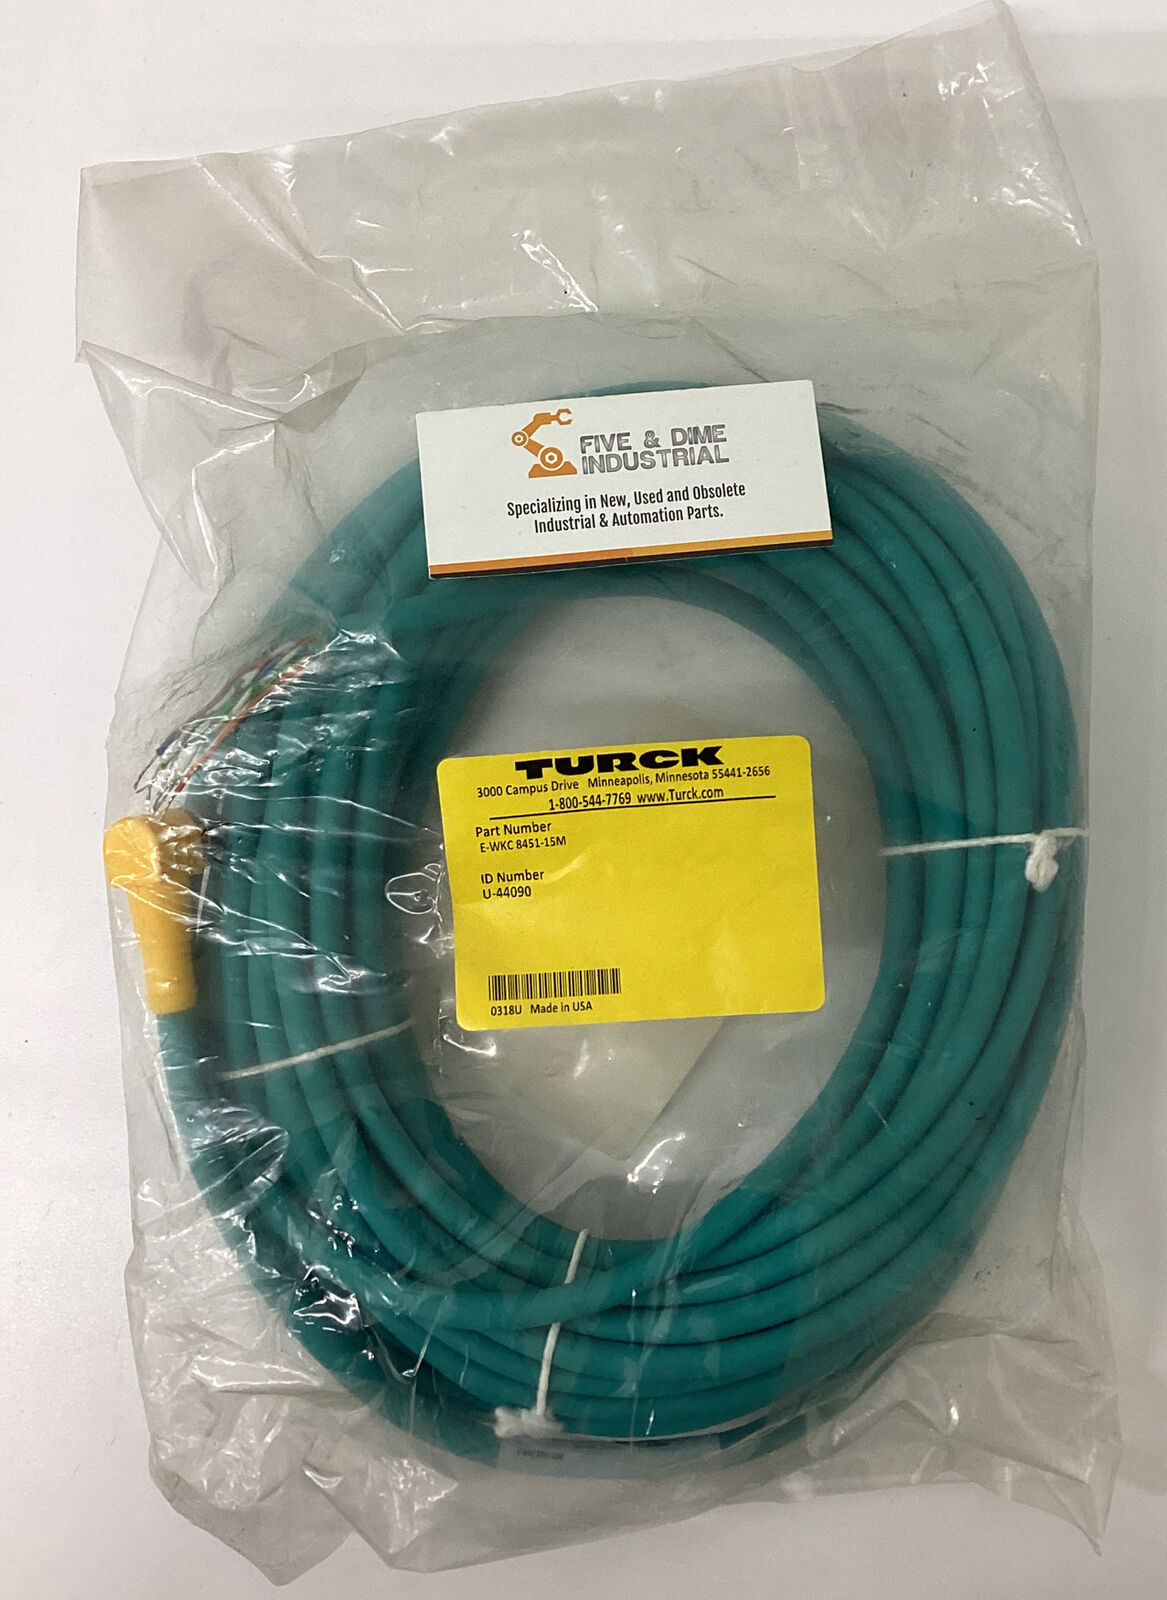 Turck E-WKC-8451-15M / U-44090 Cable Cordset  90 Degree (CL336)